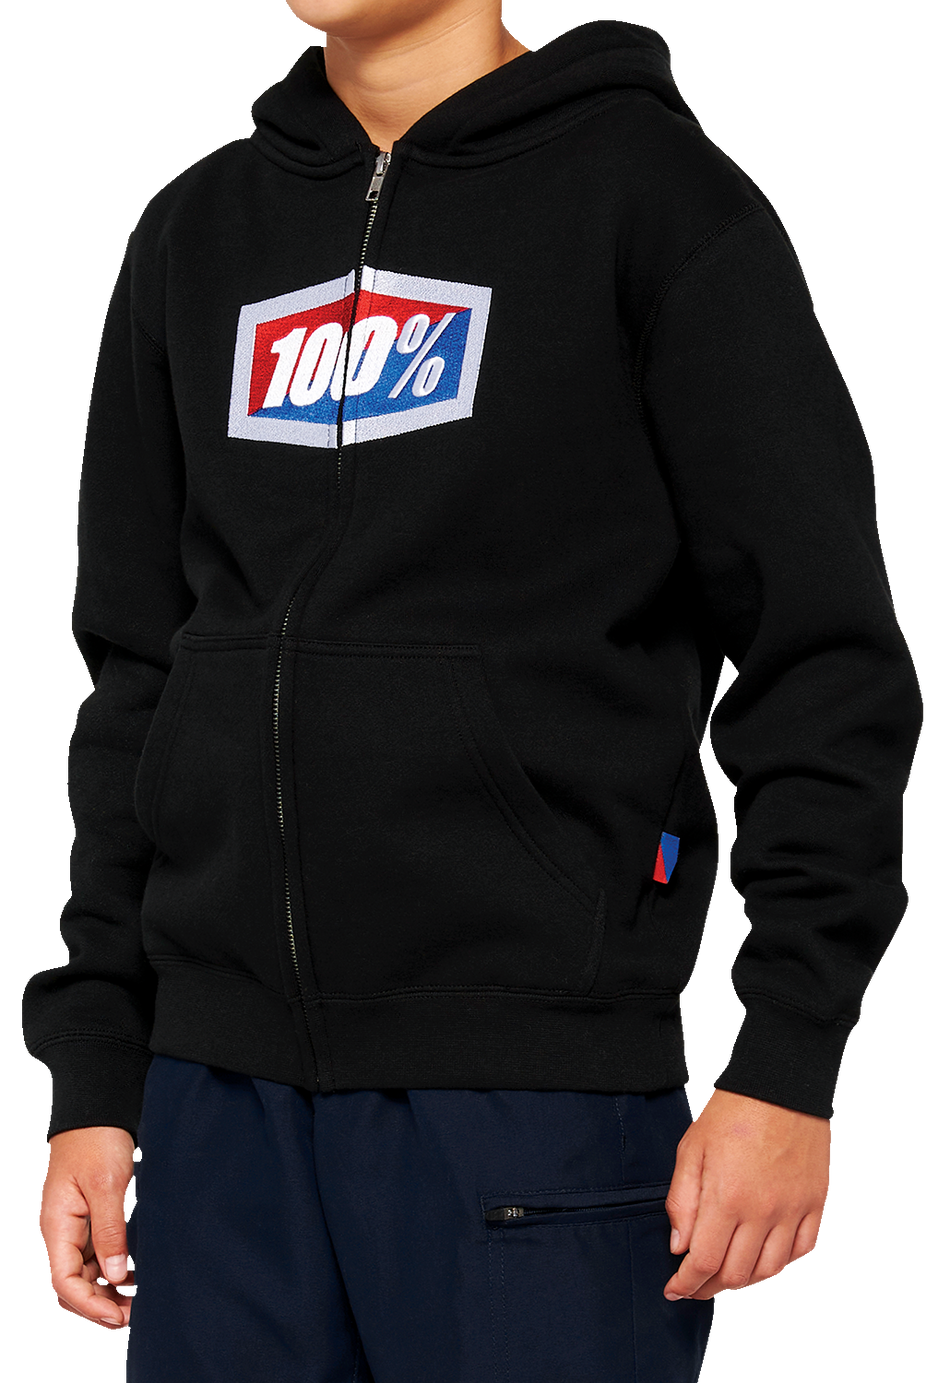 100% Youth Official Zip Hoodie - Black - Medium 20033-00001